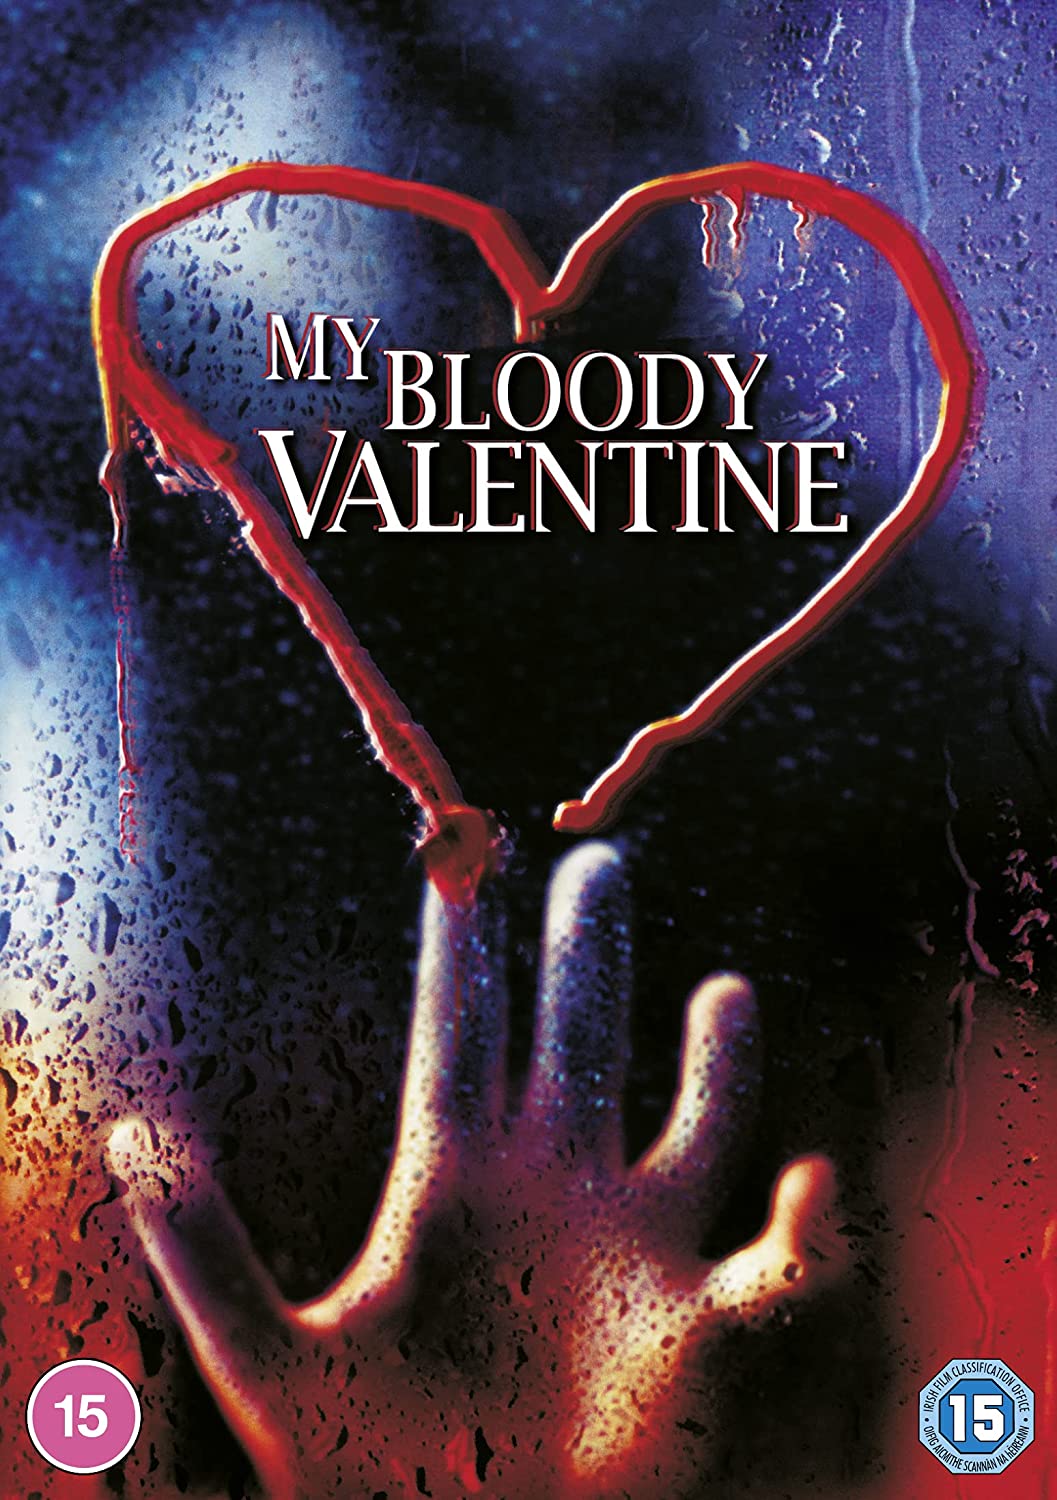 My Bloody Valentine - Horror/Thriller [DVD]